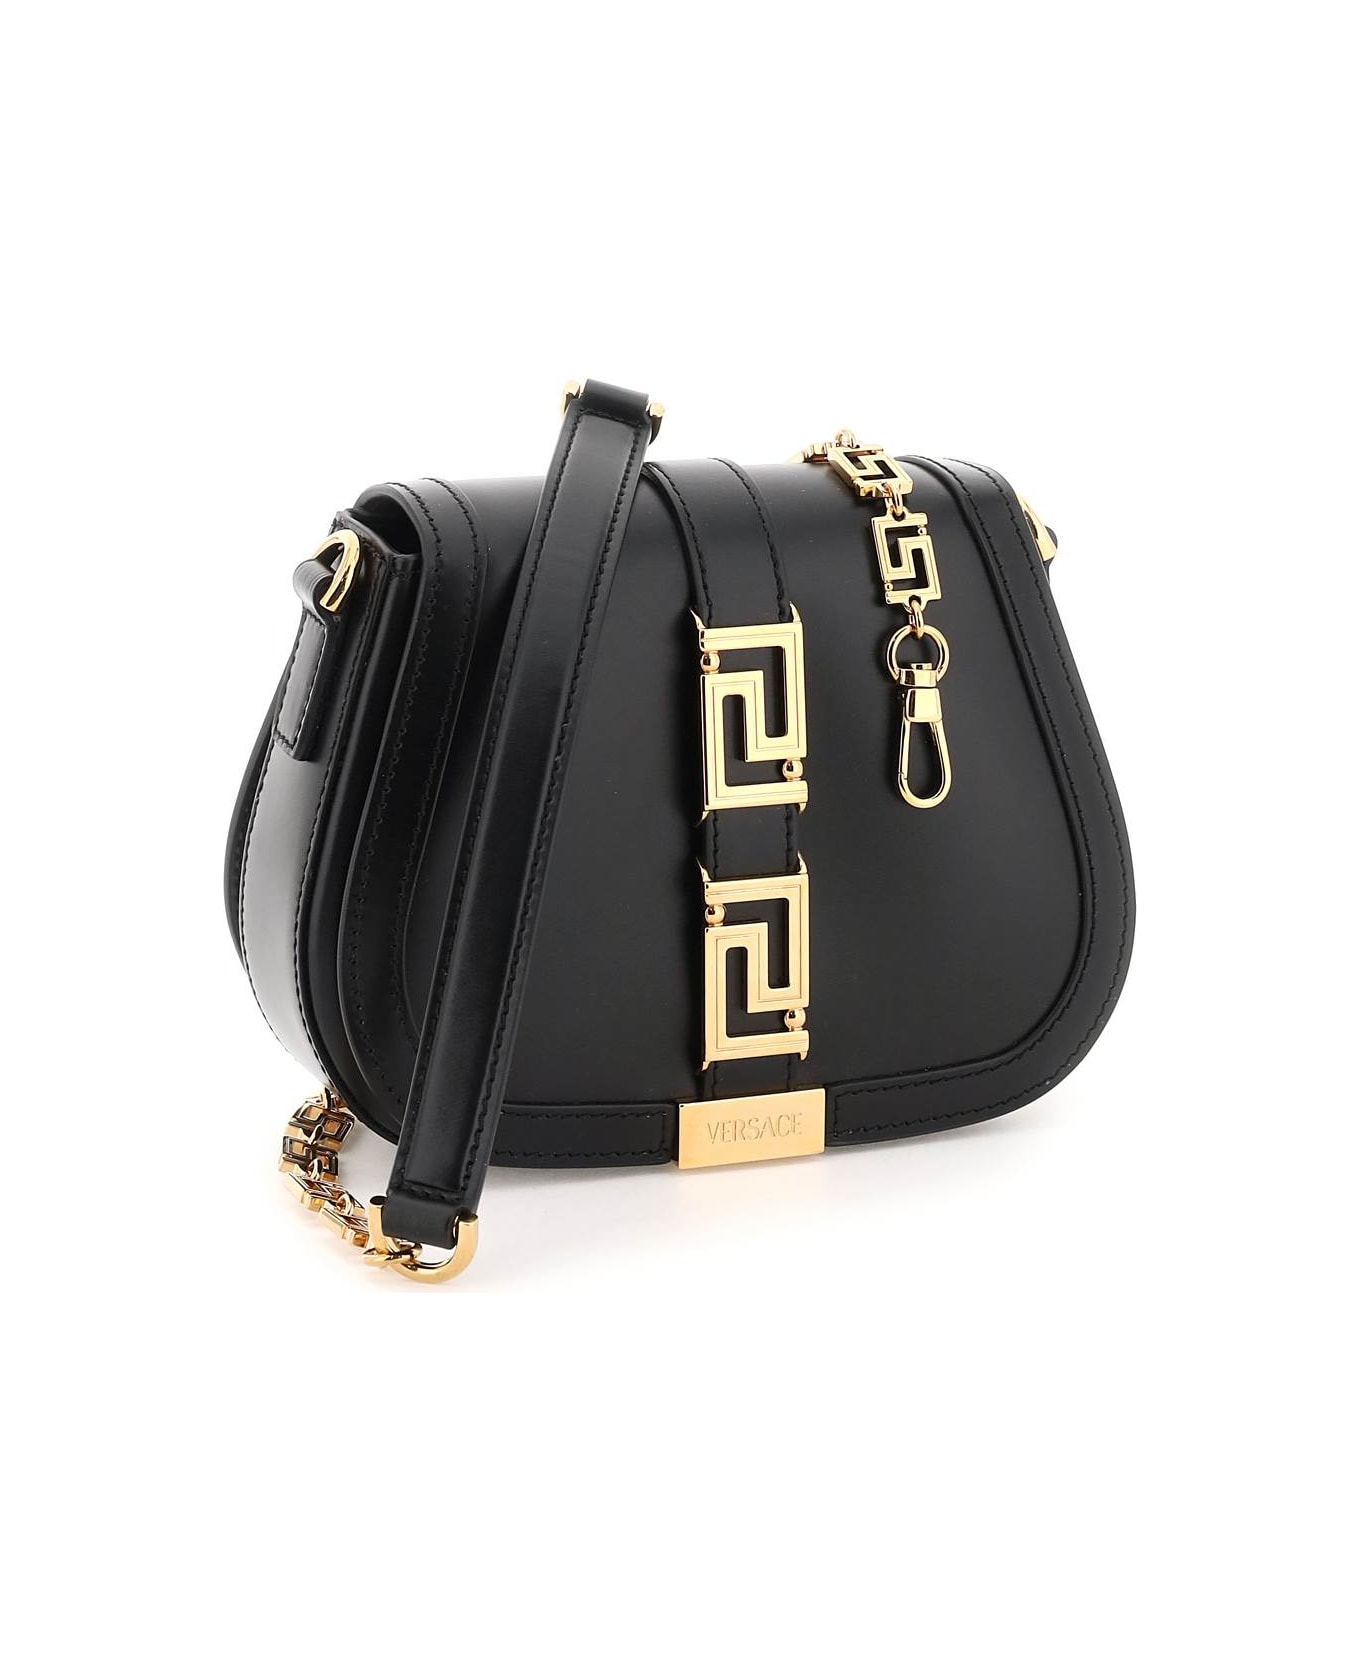 Versace Greca Goddess Leather Shoulder Bag - Black